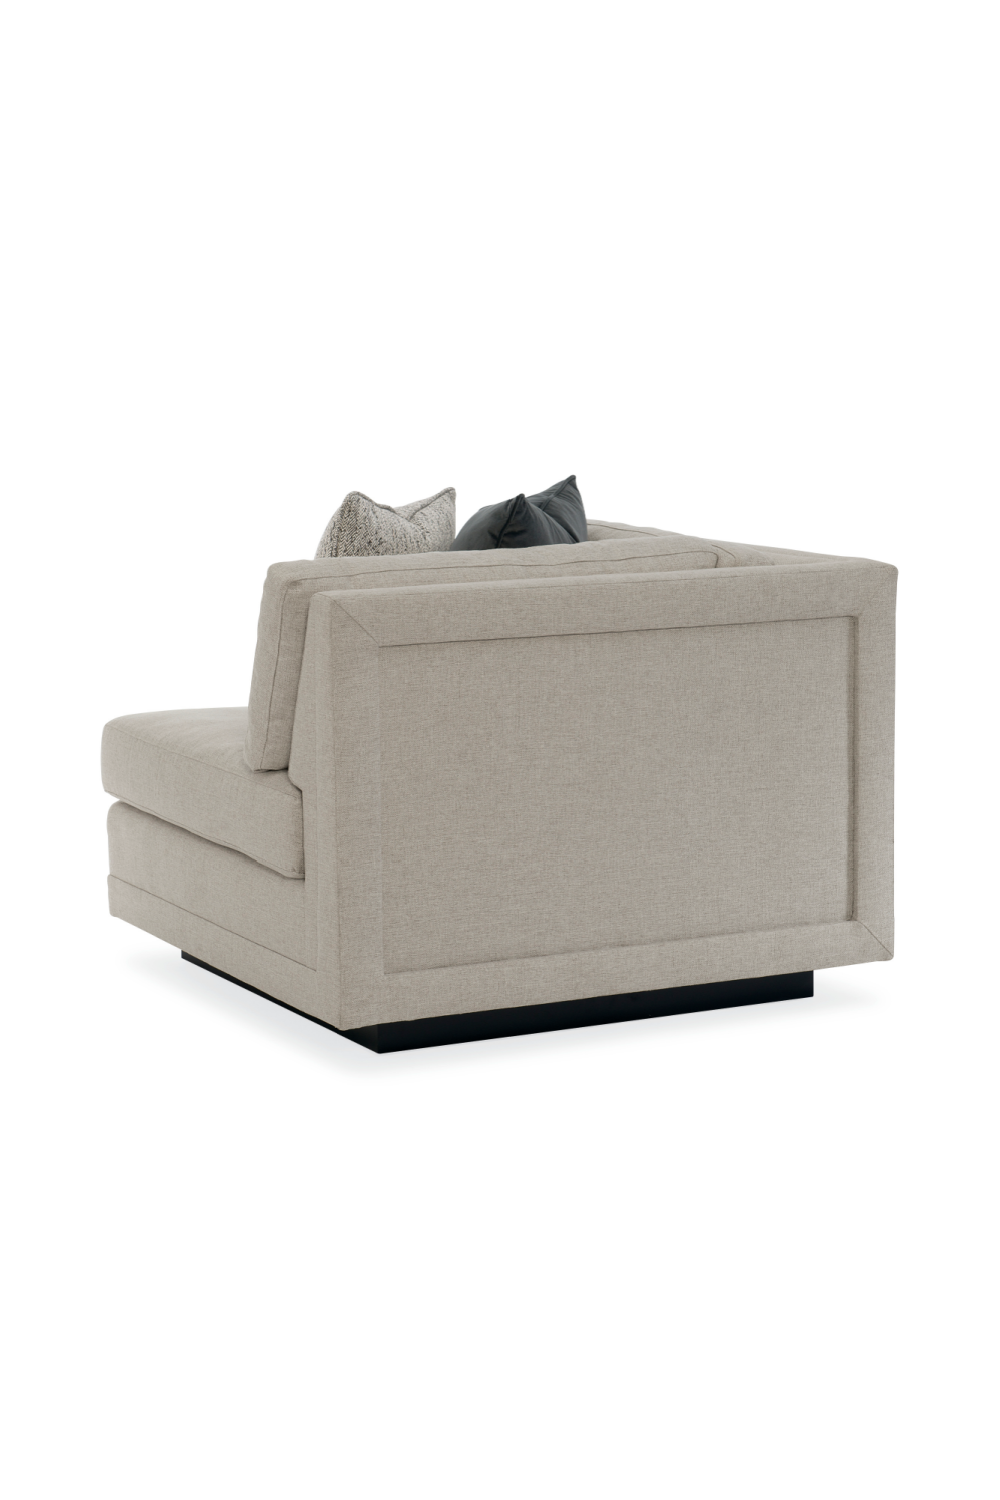 Neutral-Toned Sectional Sofa | Caracole Fusion | Oroa.com